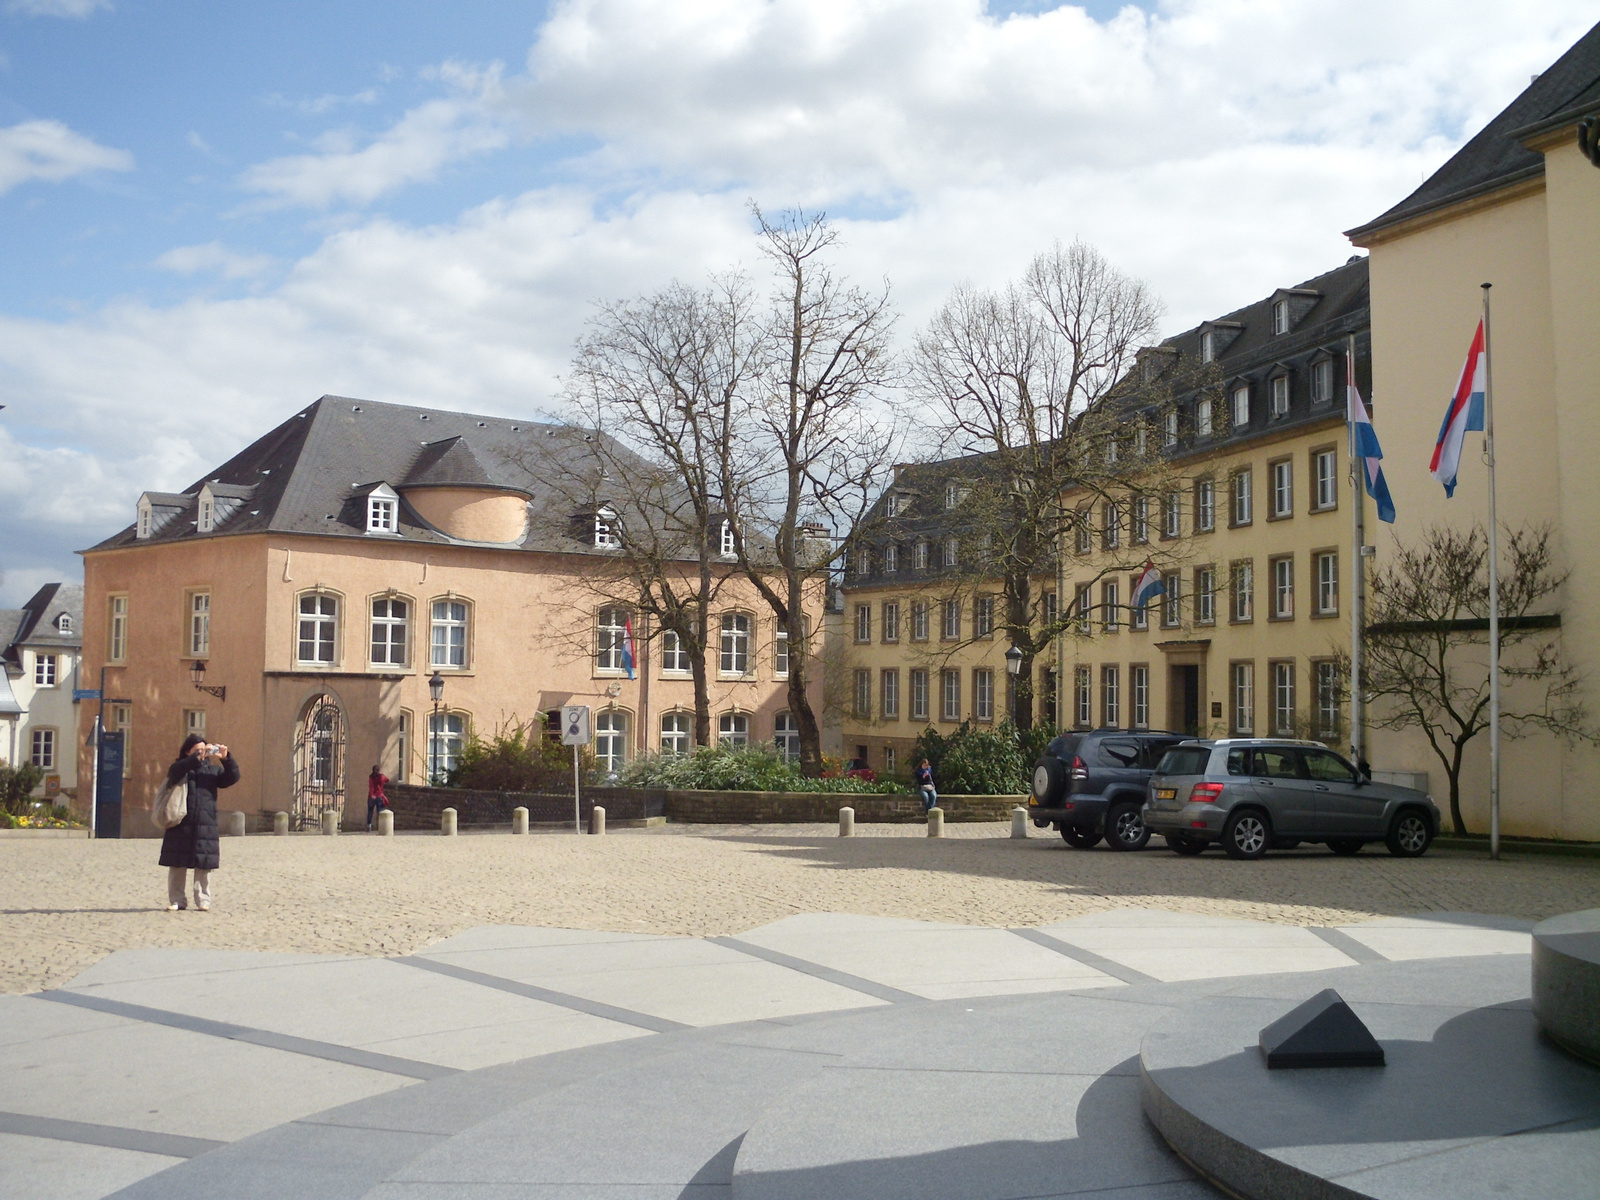 Luxemburg, kormányzati negyed